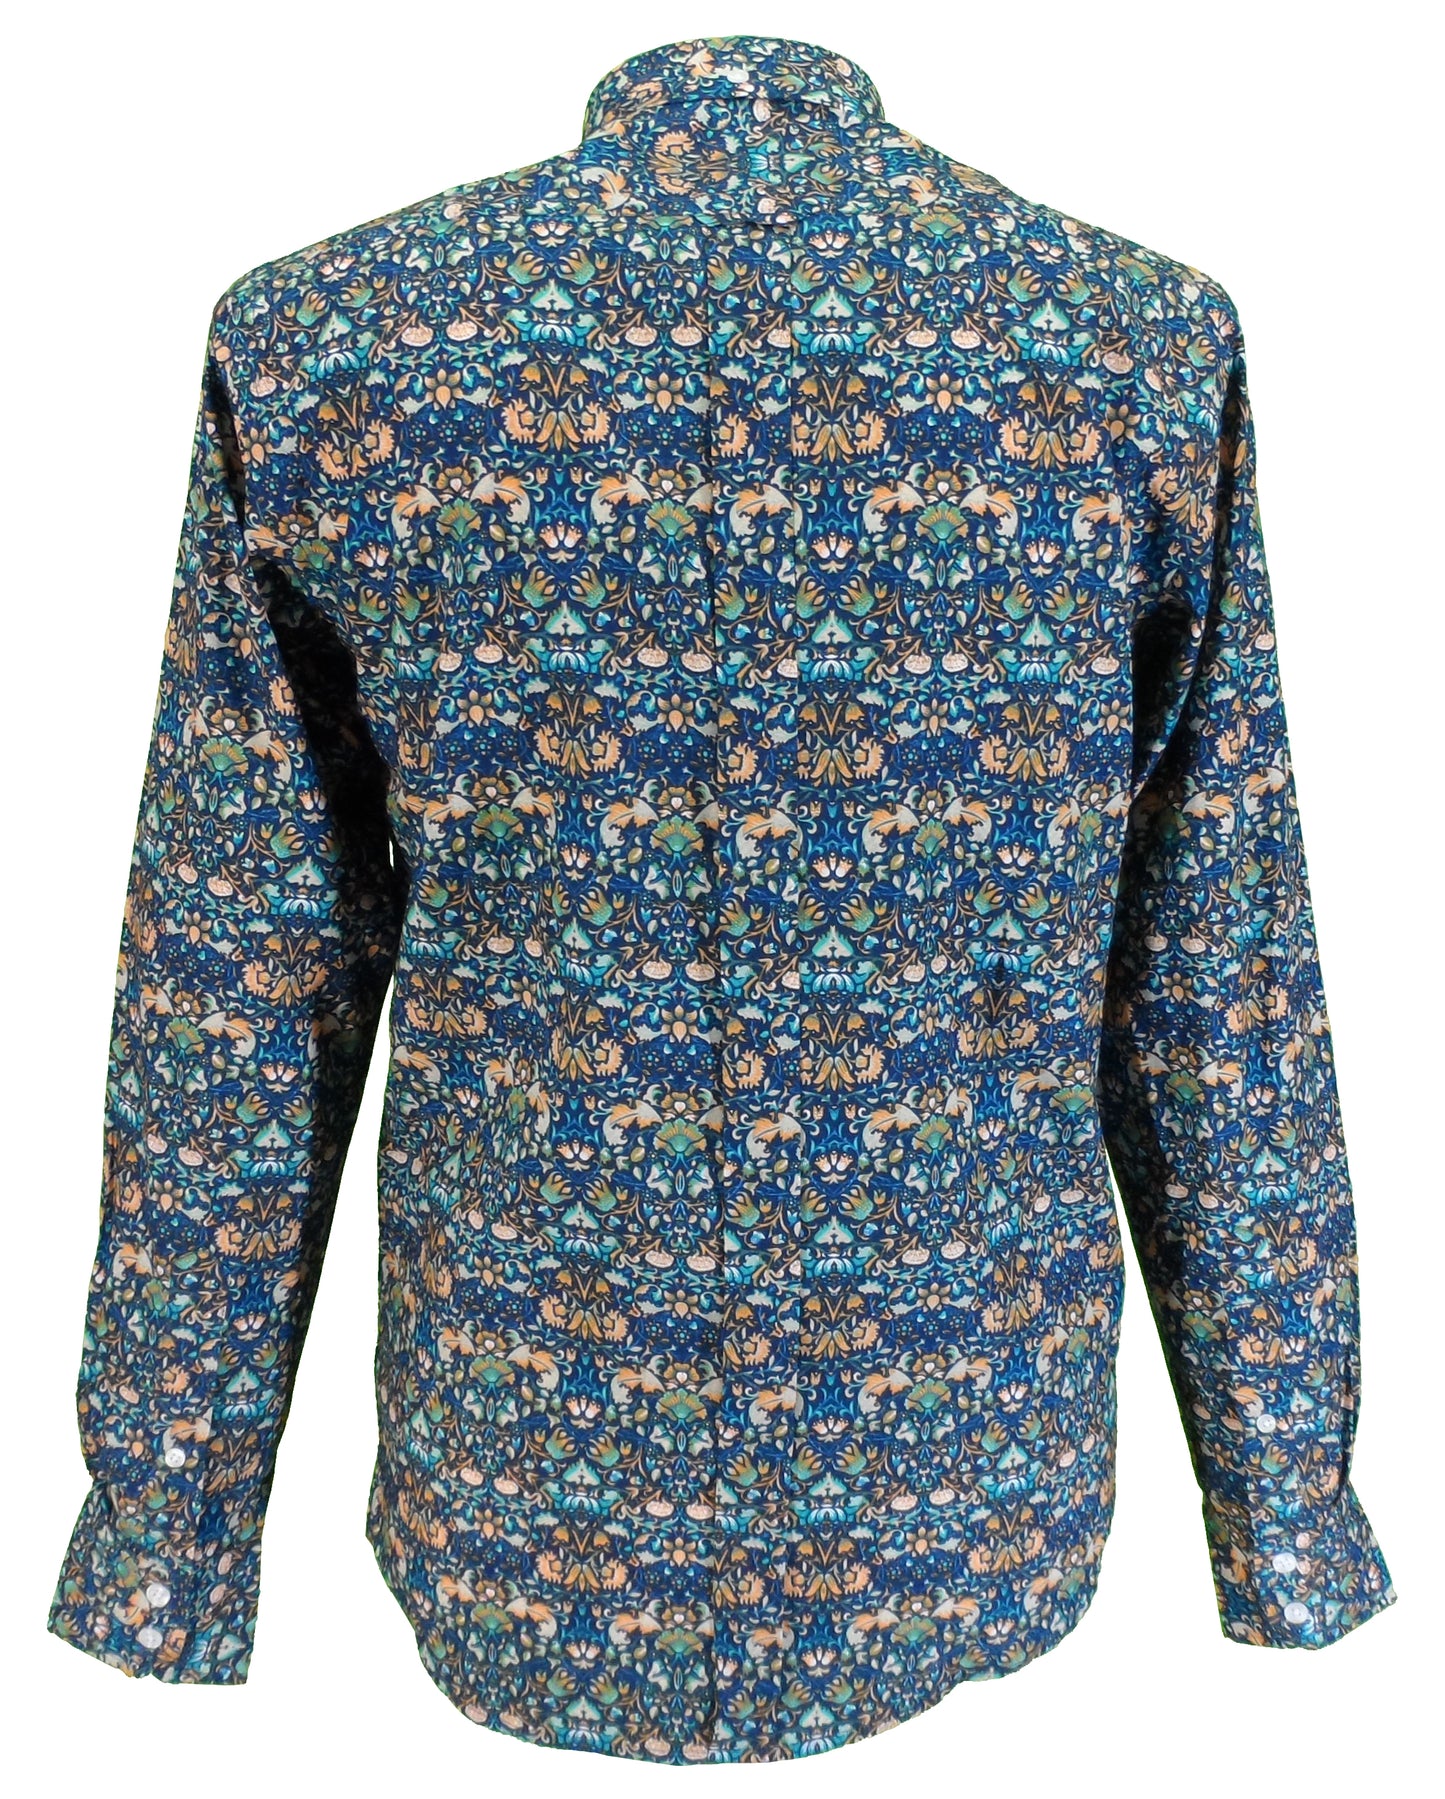 Relco Herren-Hemden mit blauen Knöpfen im Retro-Stil mit Blumenmuster